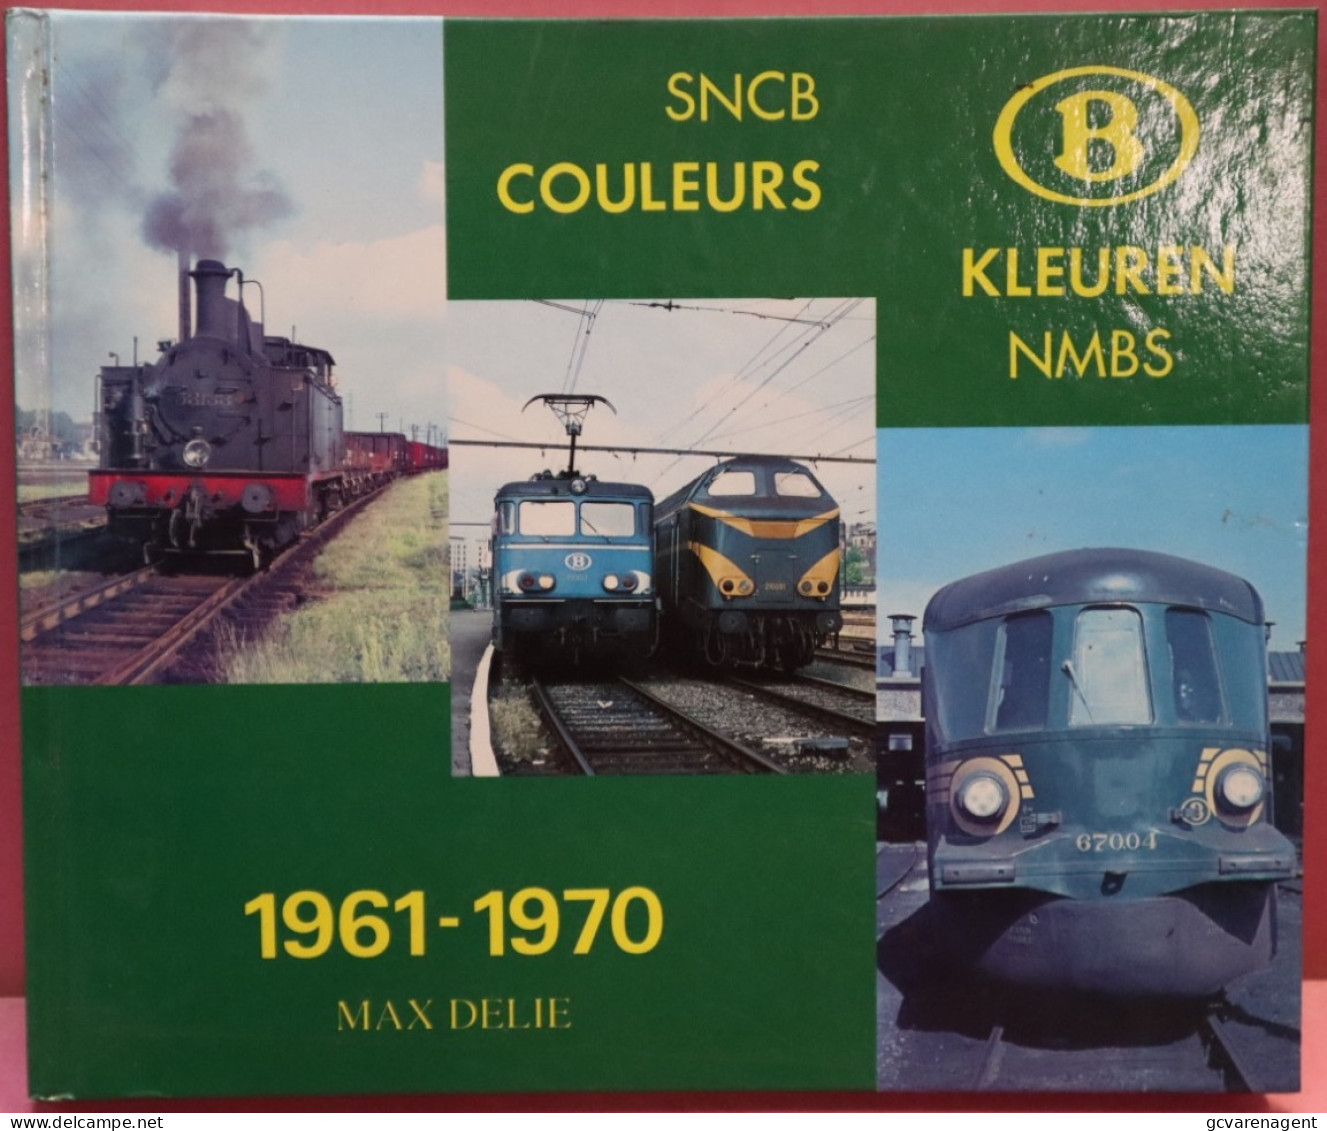 2 TALIG - SNCB COULEURS  KLEUREN NMBS  1961 - 1970 51 BLZ TEKST 95 AFBEELDINGEN - MOOIE STAAT  26 X 21 CM  - VOIR IMAGES - Railway & Tramway